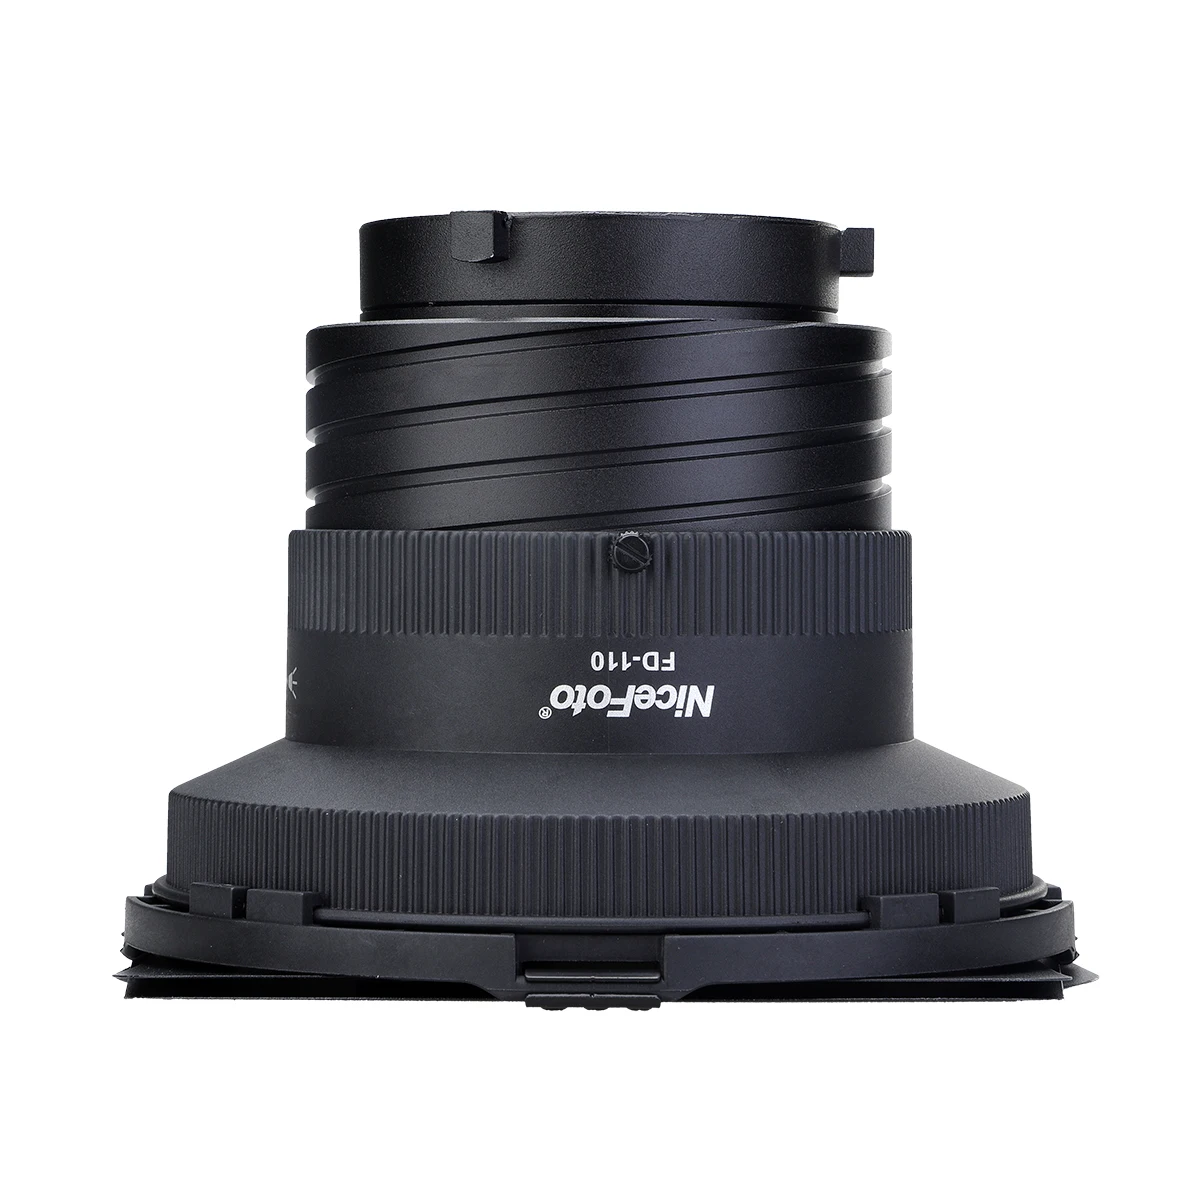 NiceFoto FD-110 Focus Adjuster Fresnel lens for Bowens Mount LED video light images - 6